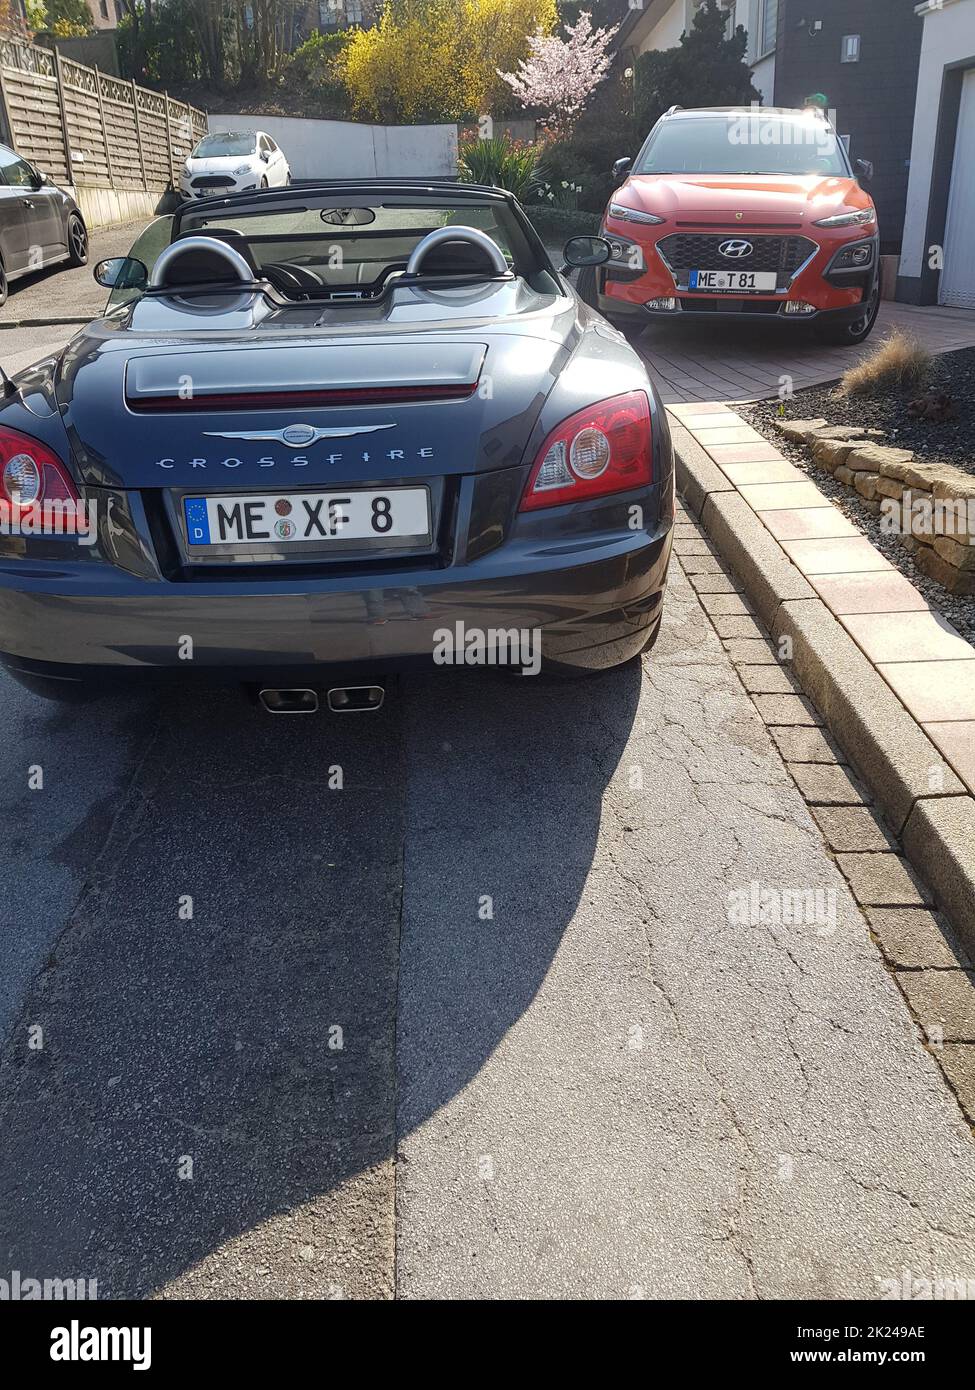 HEILIGENHAUS, NRW, DEUTSCHLAND - 28. MÄRZ 2020: Ein Hyundai Kona SUV und Chrysler Crossfire Roadster parken vor einem Haus Stockfoto